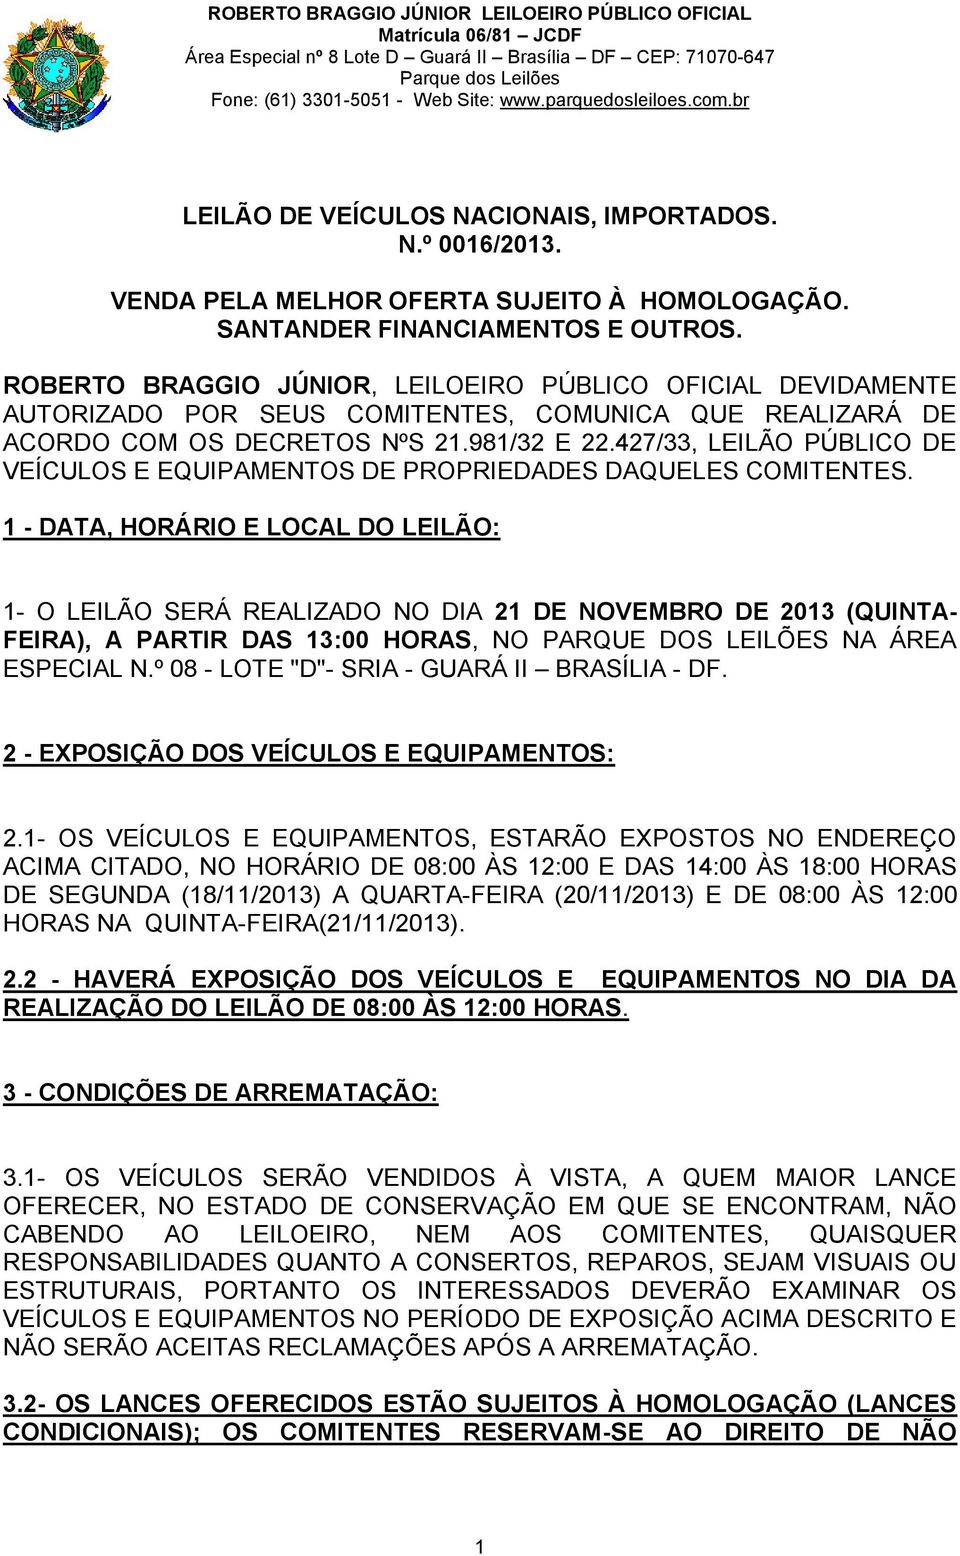 427/33, LEILÃO PÚBLICO DE VEÍCULOS E EQUIPAMENTOS DE PROPRIEDADES DAQUELES COMITENTES.